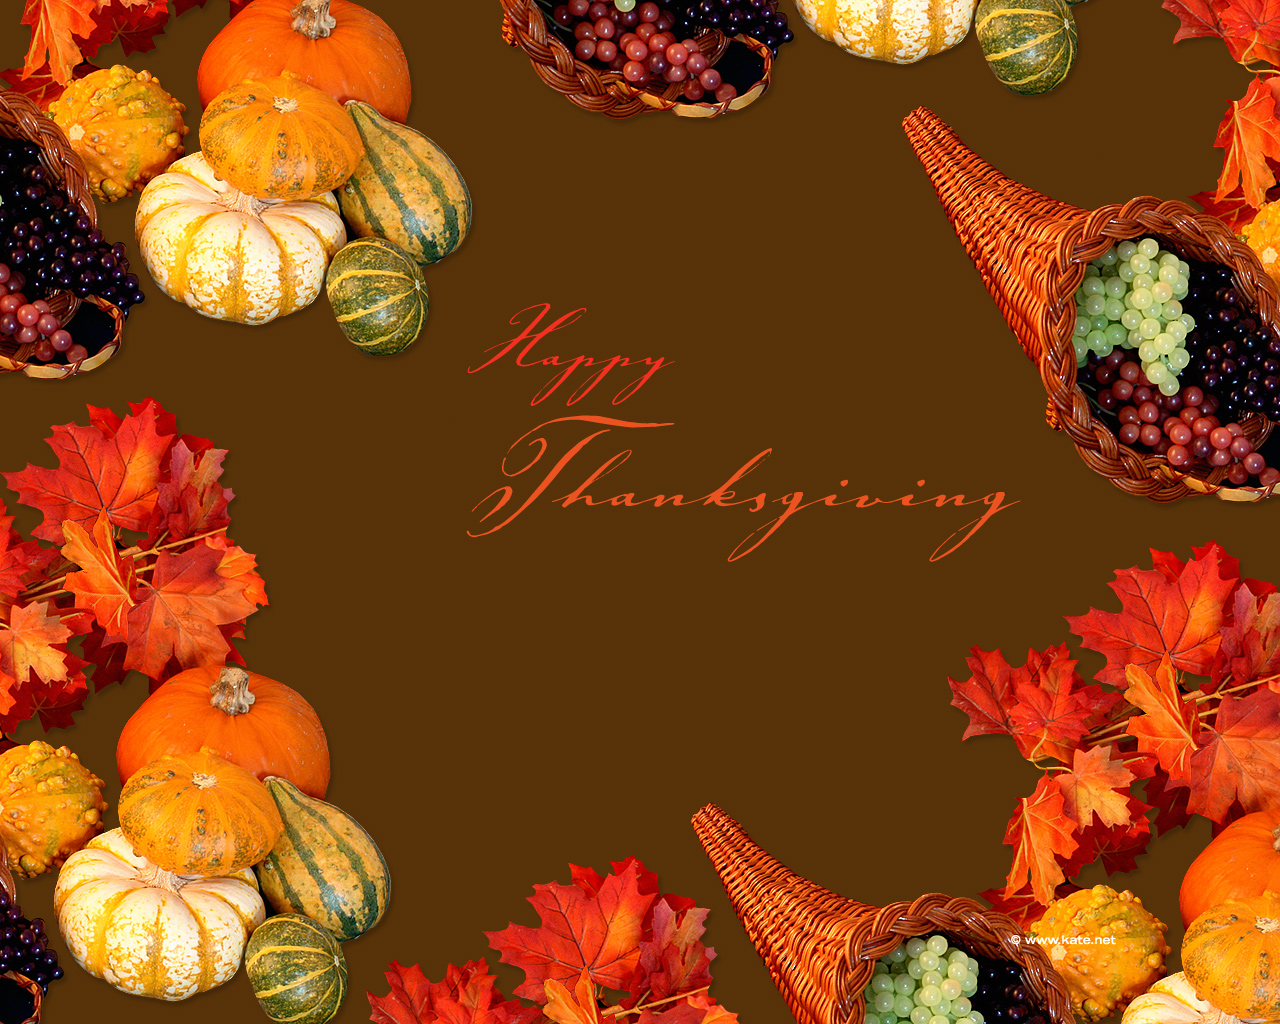 Thanksgivings Free Thanksgiving image